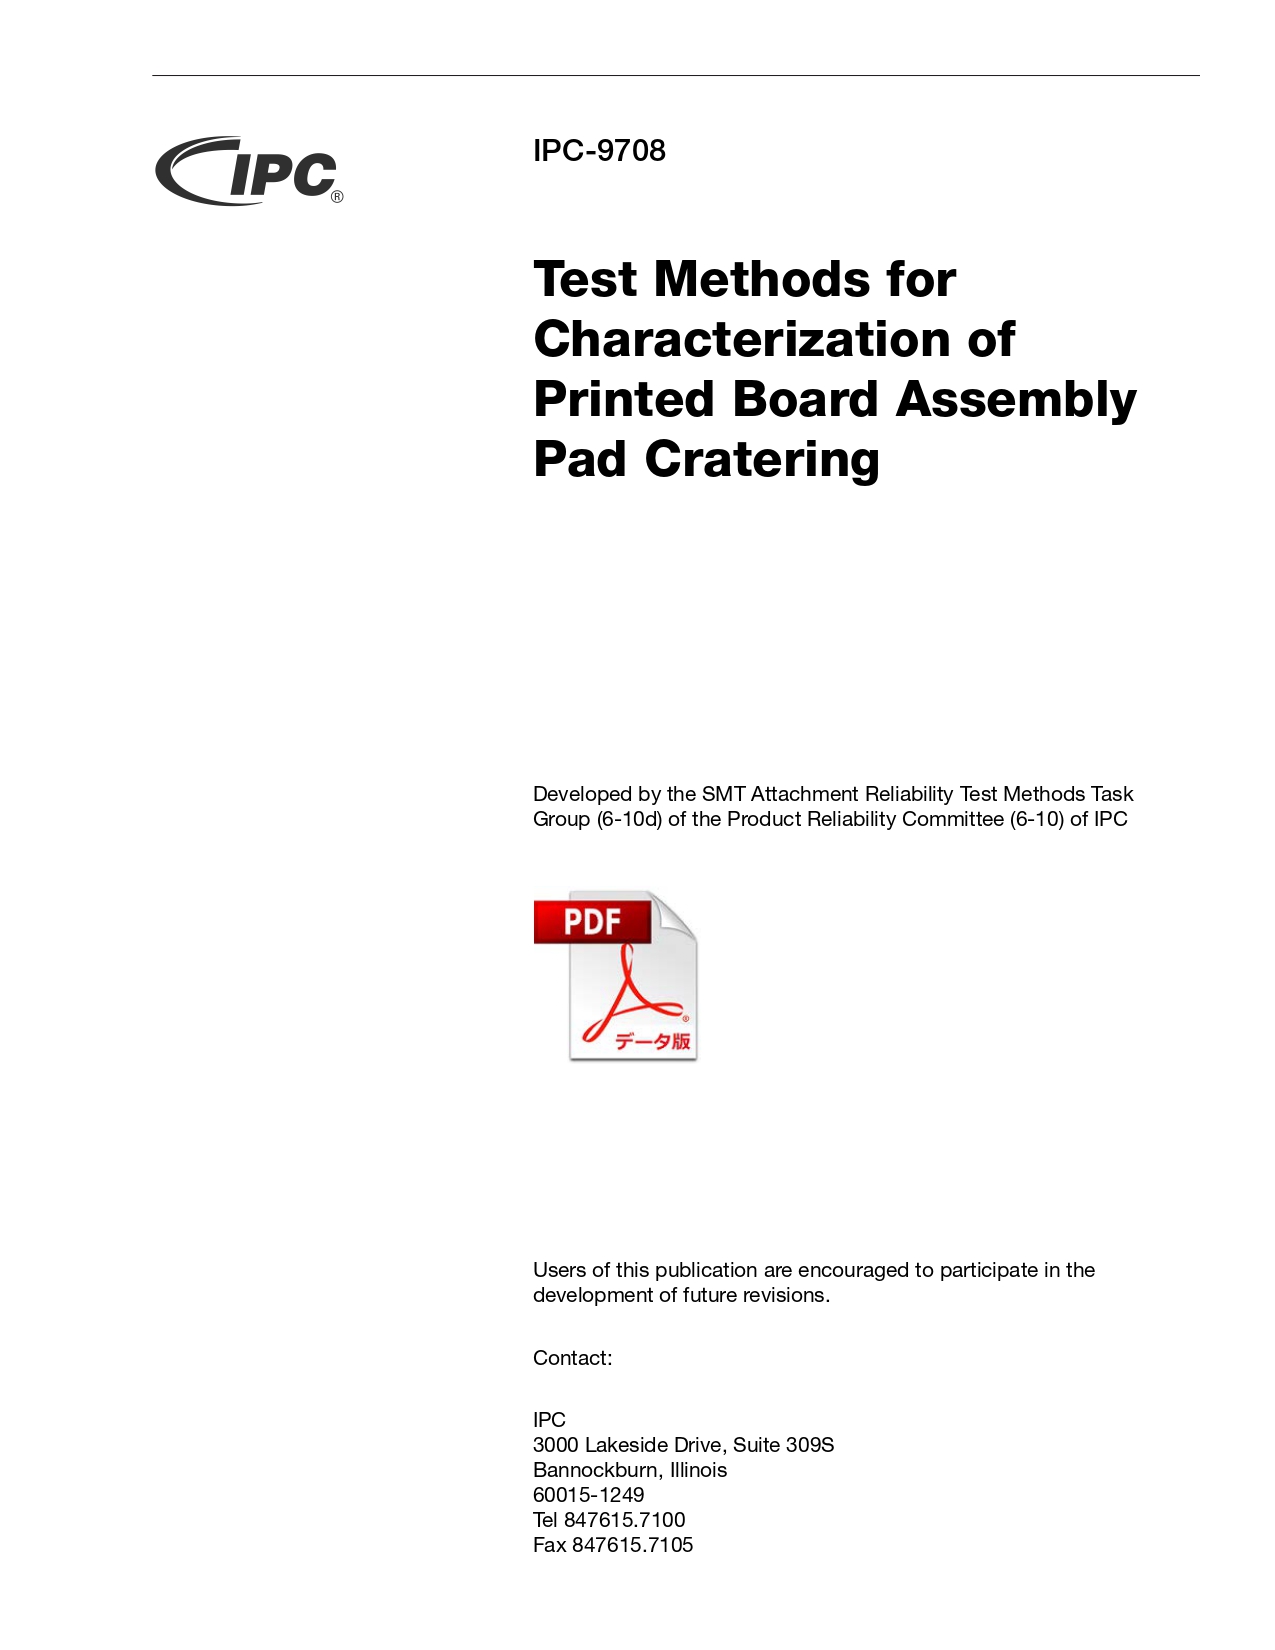 ［英語版］IPC-9708: Test Methods for Characterization of Printed Board Assembly Pad Cratering